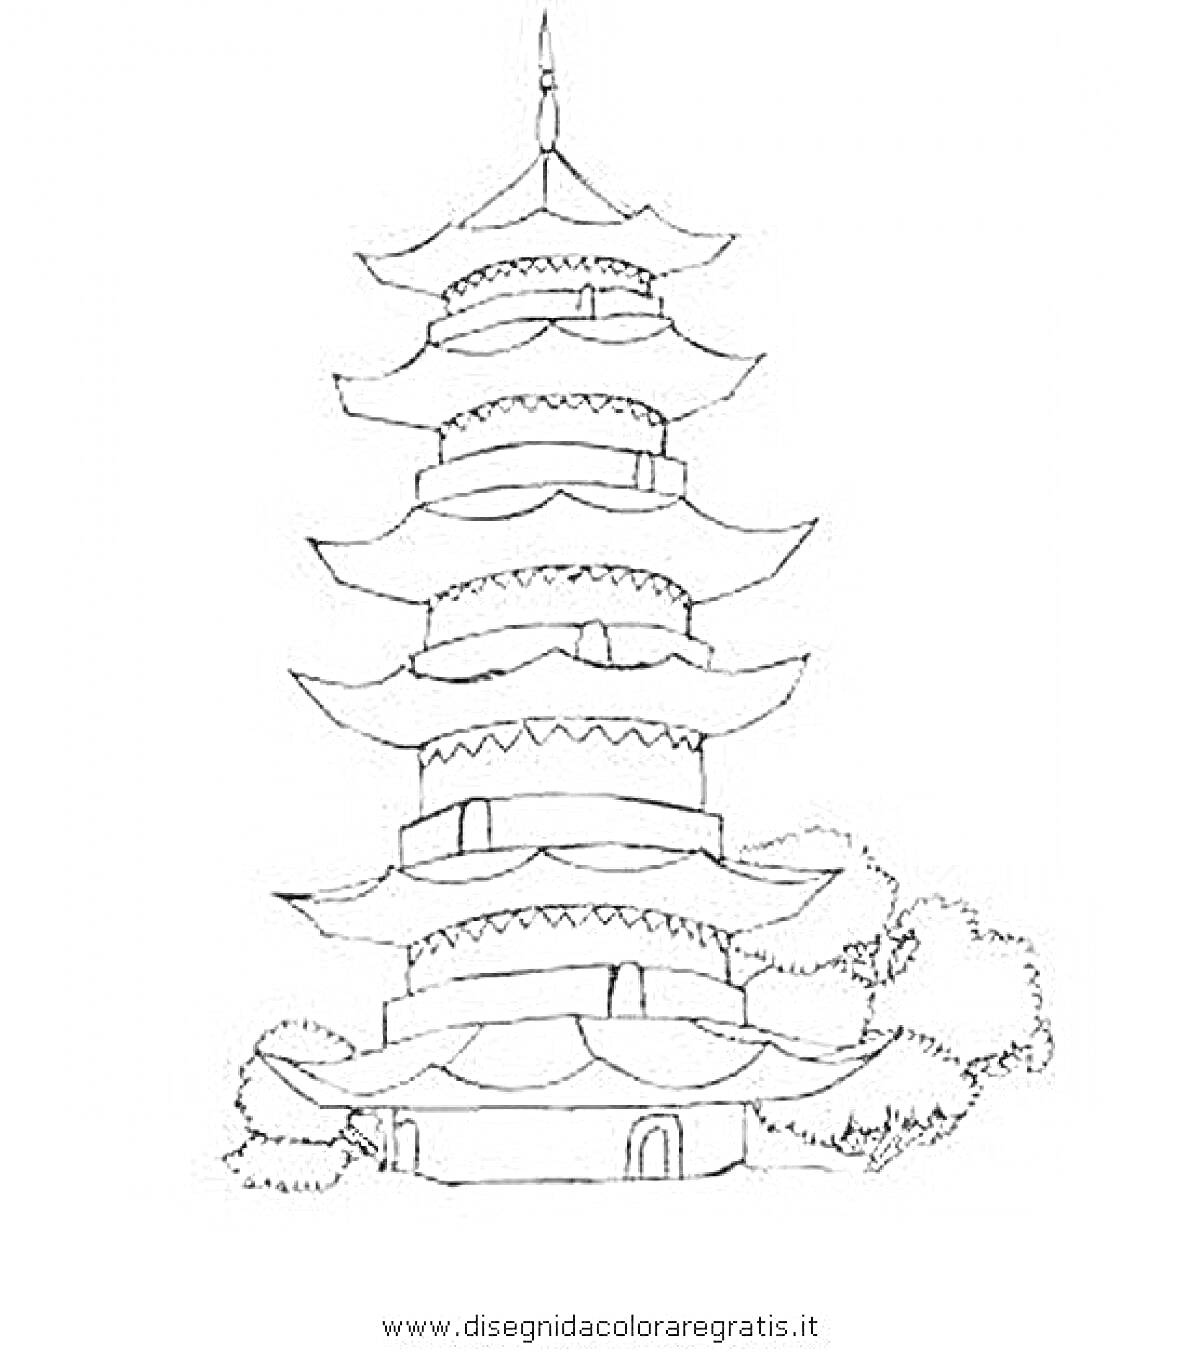 На раскраске изображено: Пагода, Храм, Здание, Архитектура, Деревья, Природа, Восток, Башни, Крыша